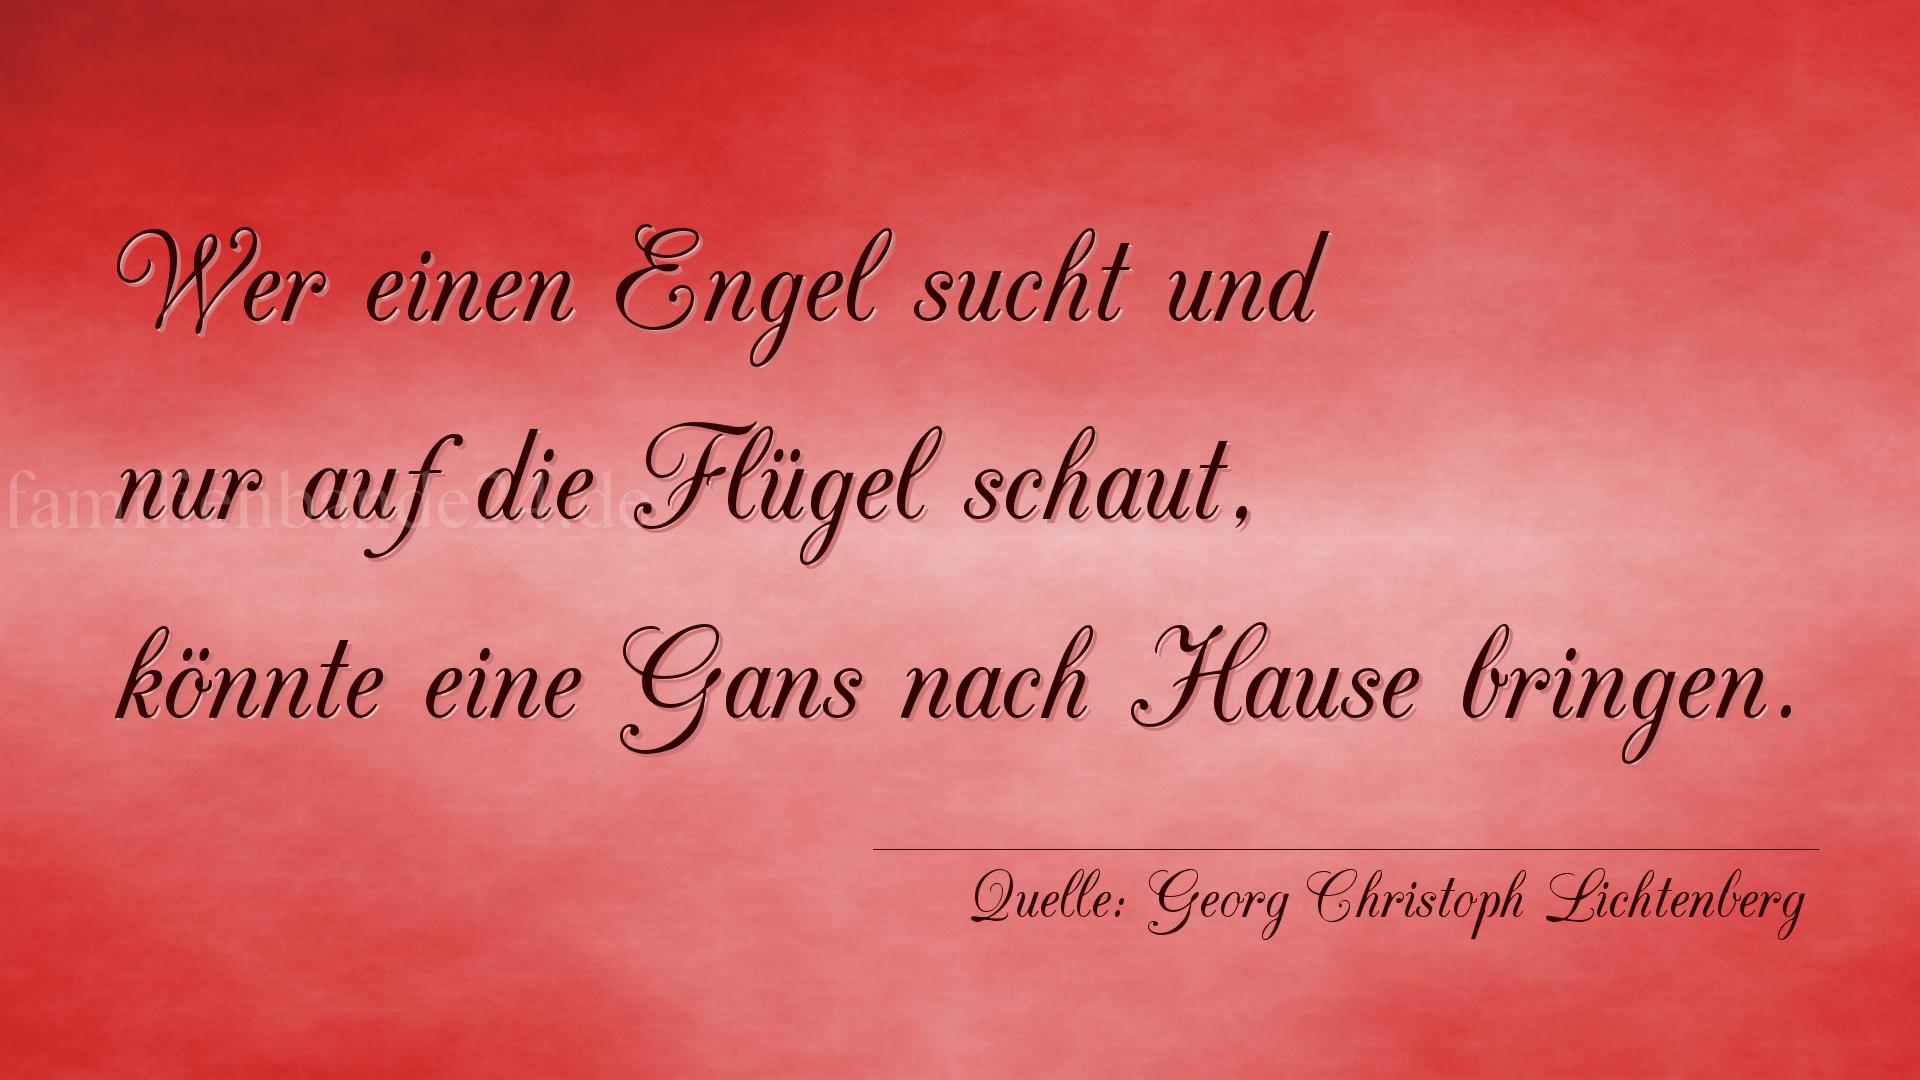 Aphorismus Nr. 1300 (von Georg Christoph Lichtenberg): "Wer einen Engel sucht und nur auf die Flügel schaut, kö [...]